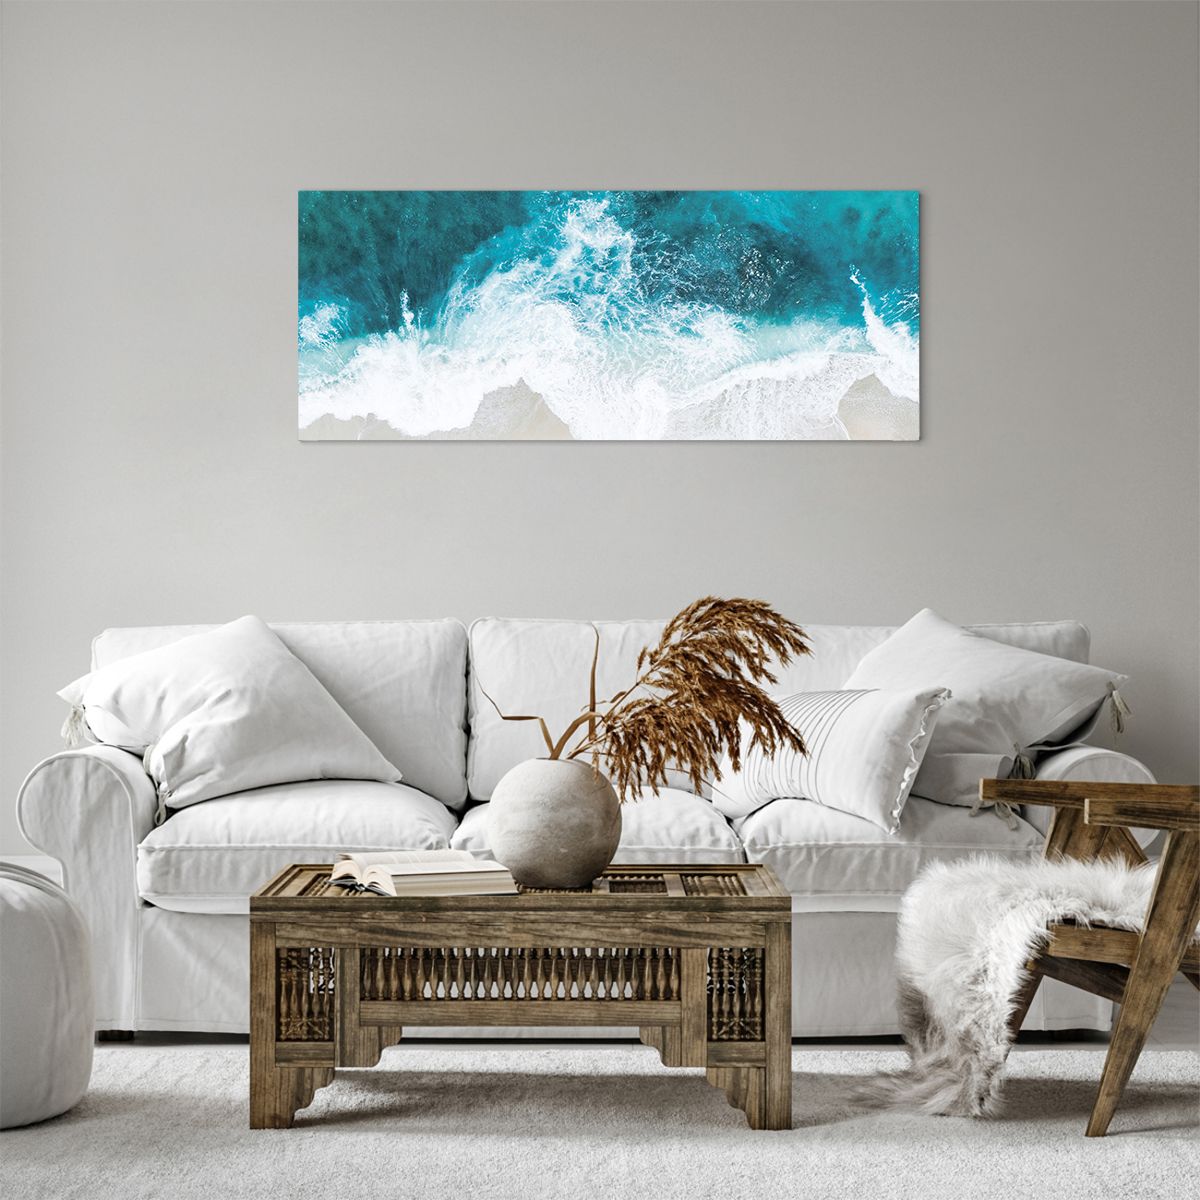 Quadro su tela Paesaggio, Quadro su tela Spiaggia, Quadro su tela Onda Marina, Quadro su tela Mare, Quadro su tela Oceano